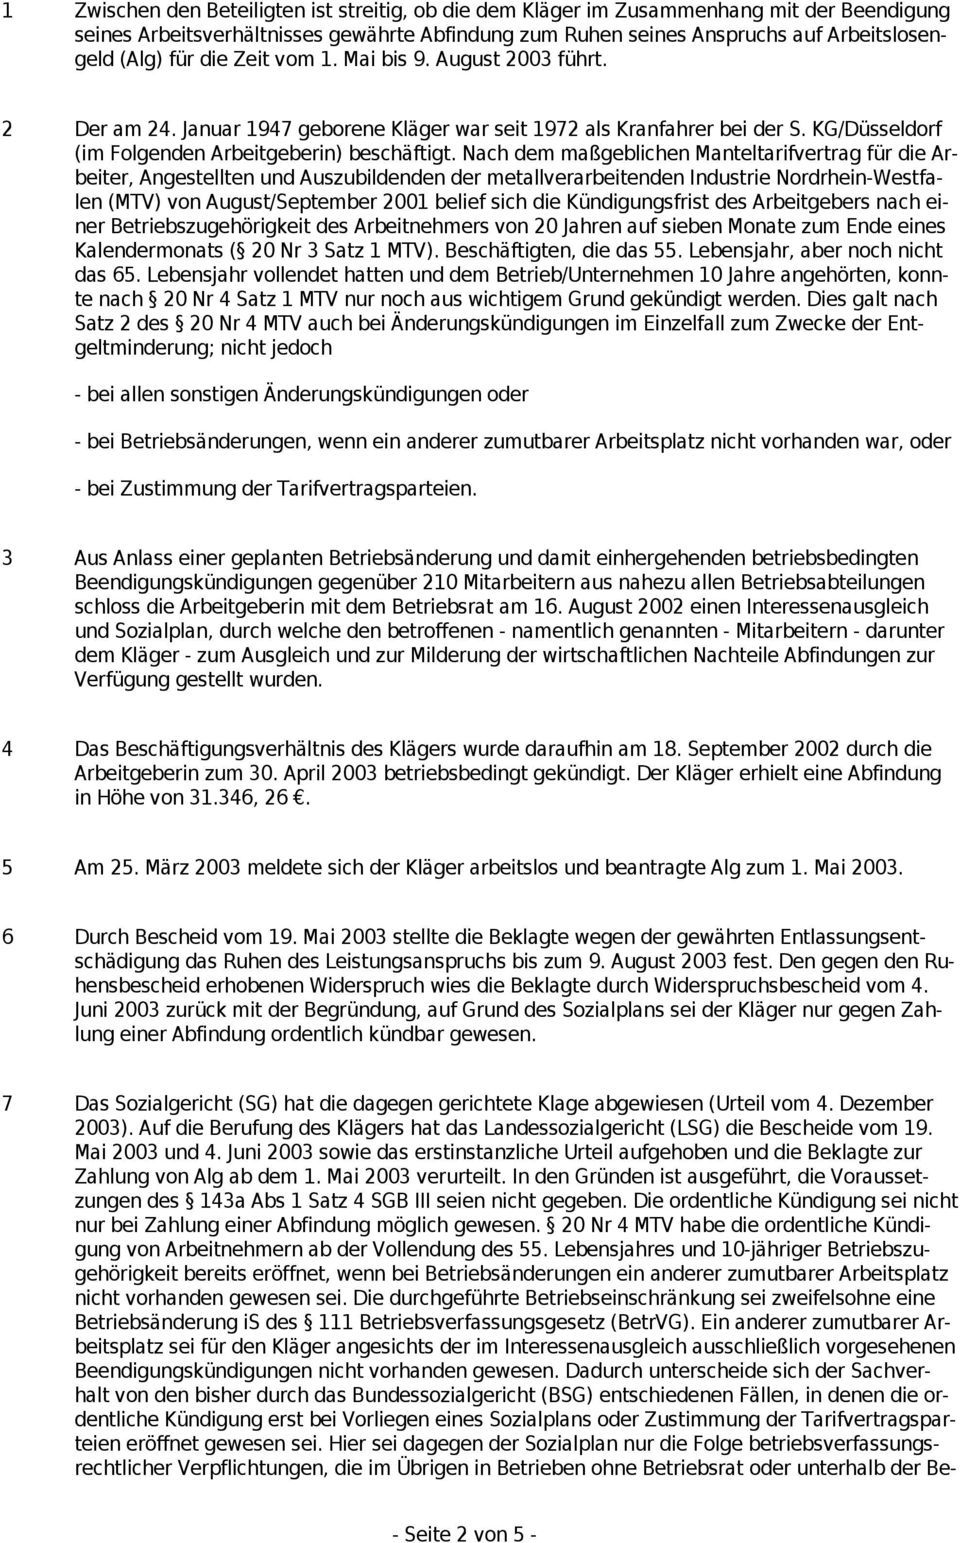 Nach dem maßgeblichen Manteltarifvertrag für die Arbeiter, Angestellten und Auszubildenden der metallverarbeitenden Industrie Nordrhein-Westfalen (MTV) von August/September 2001 belief sich die